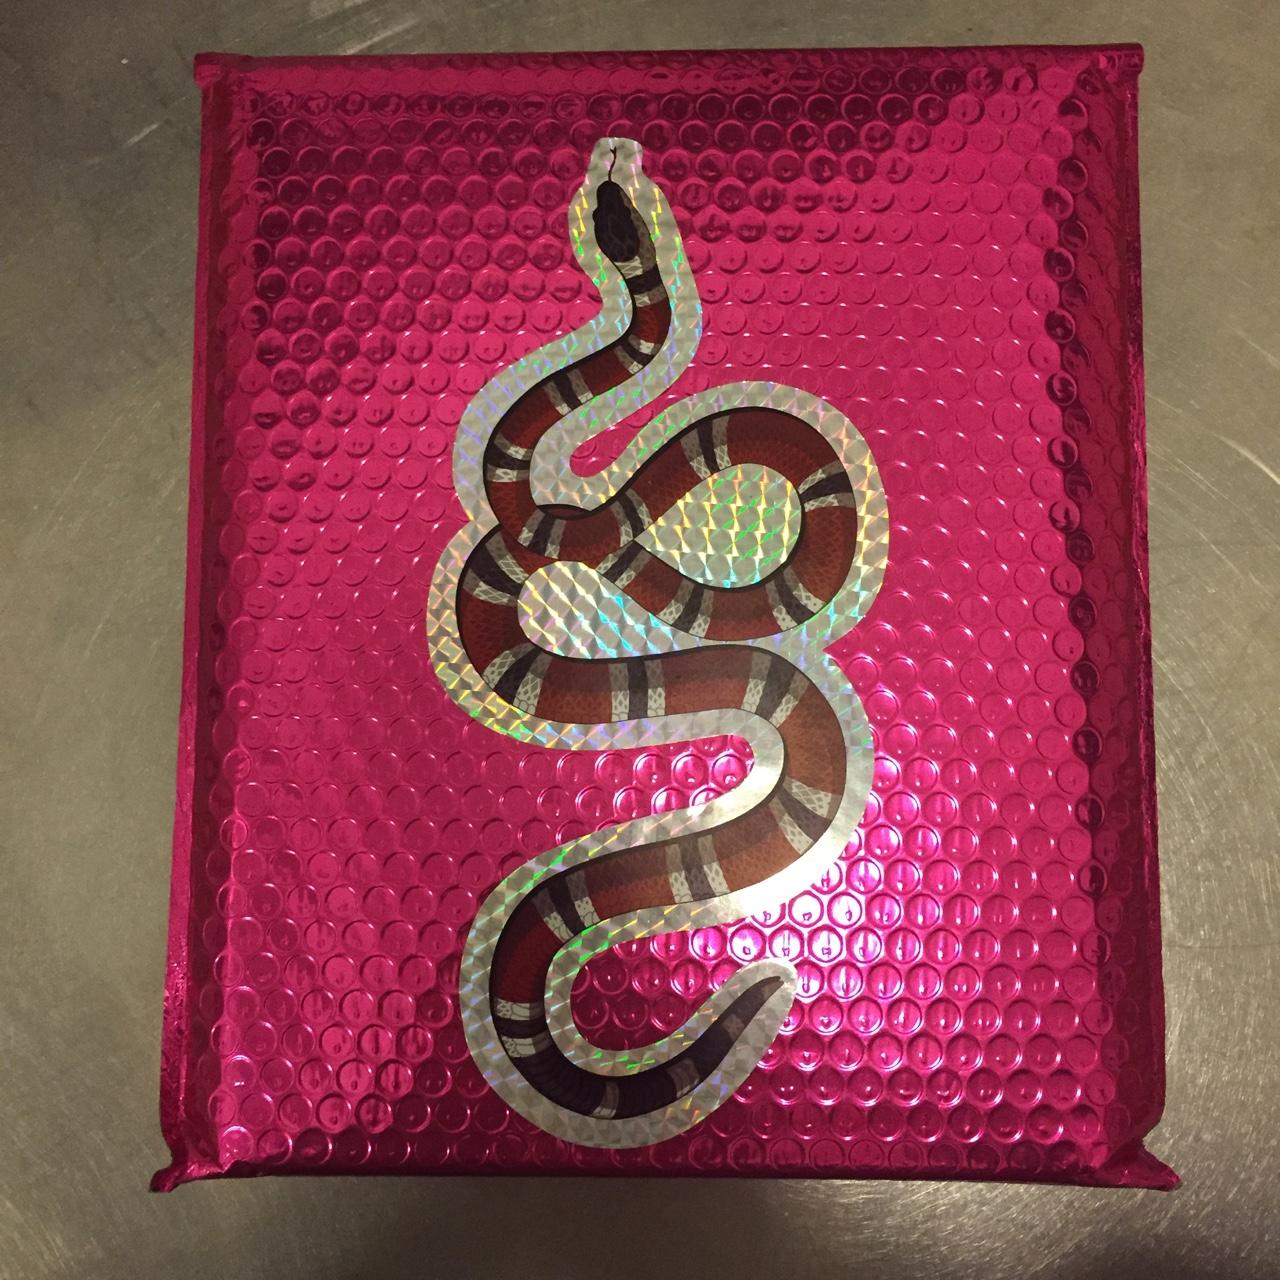 Gucci snake-wallet - Depop